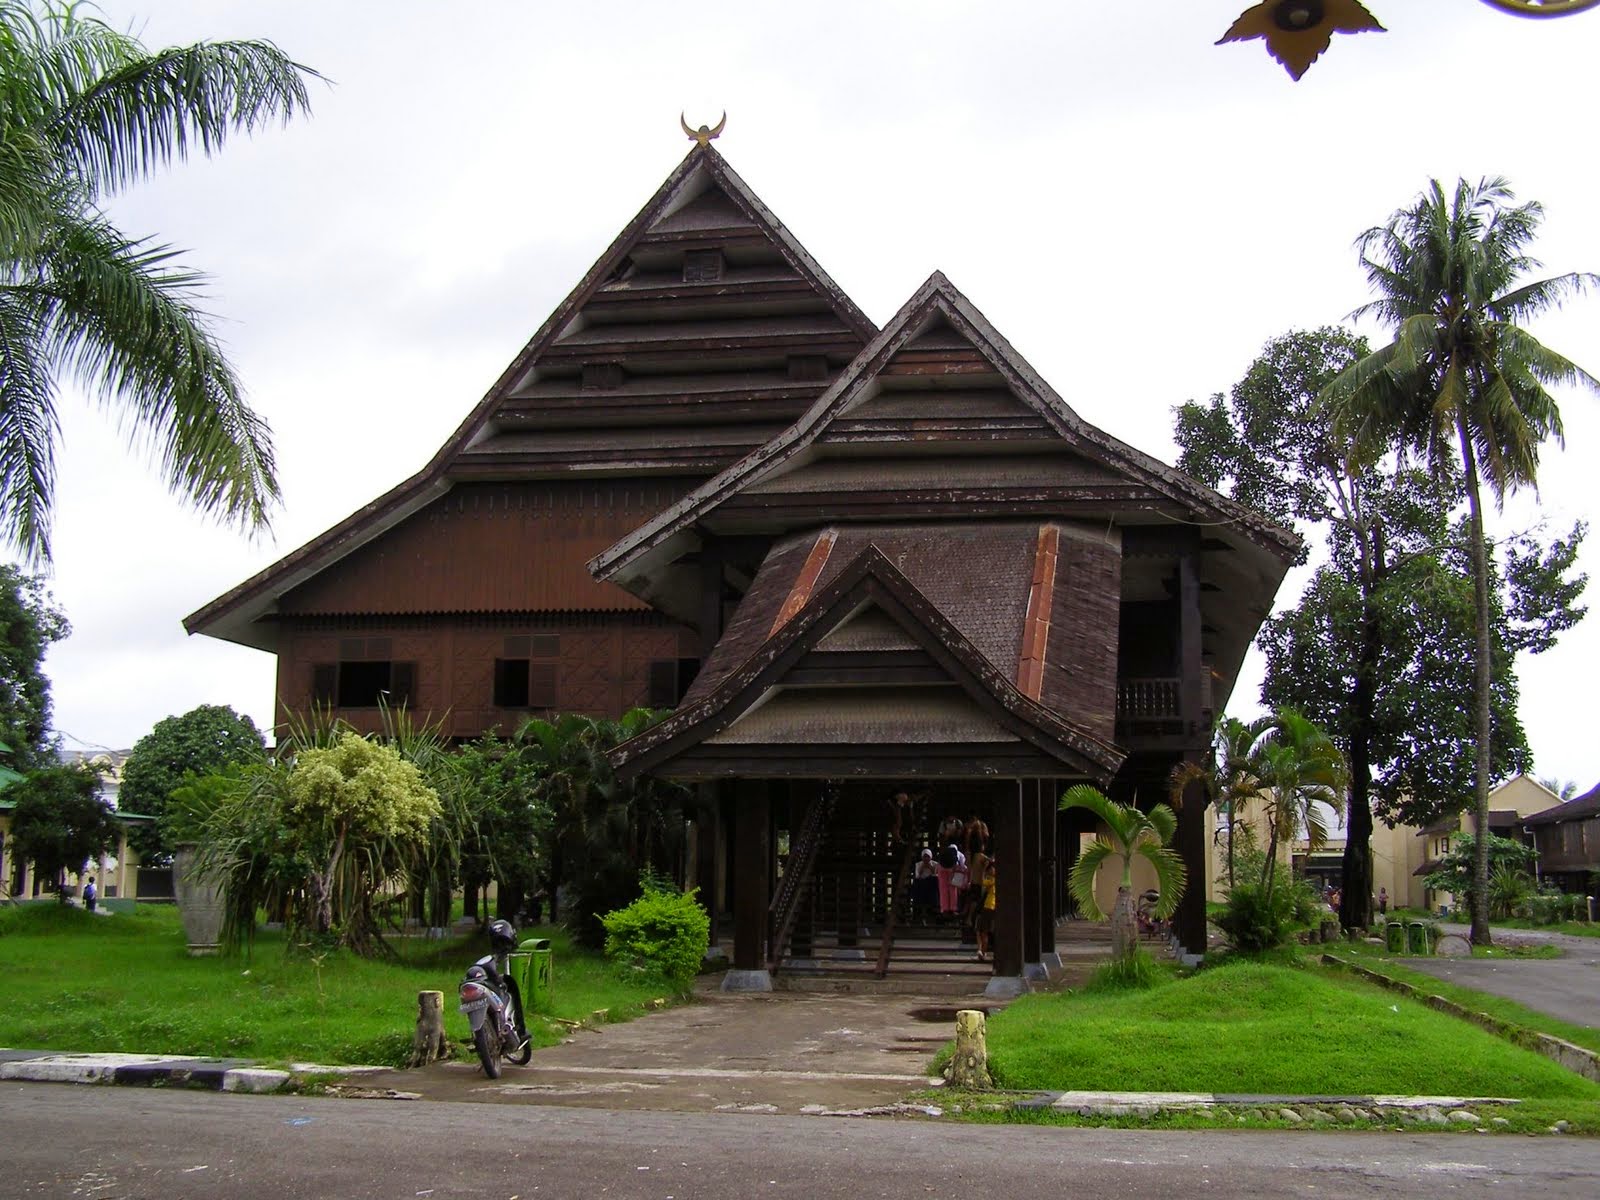 Rumah Adat Bugis dari Sulawesi Selatan